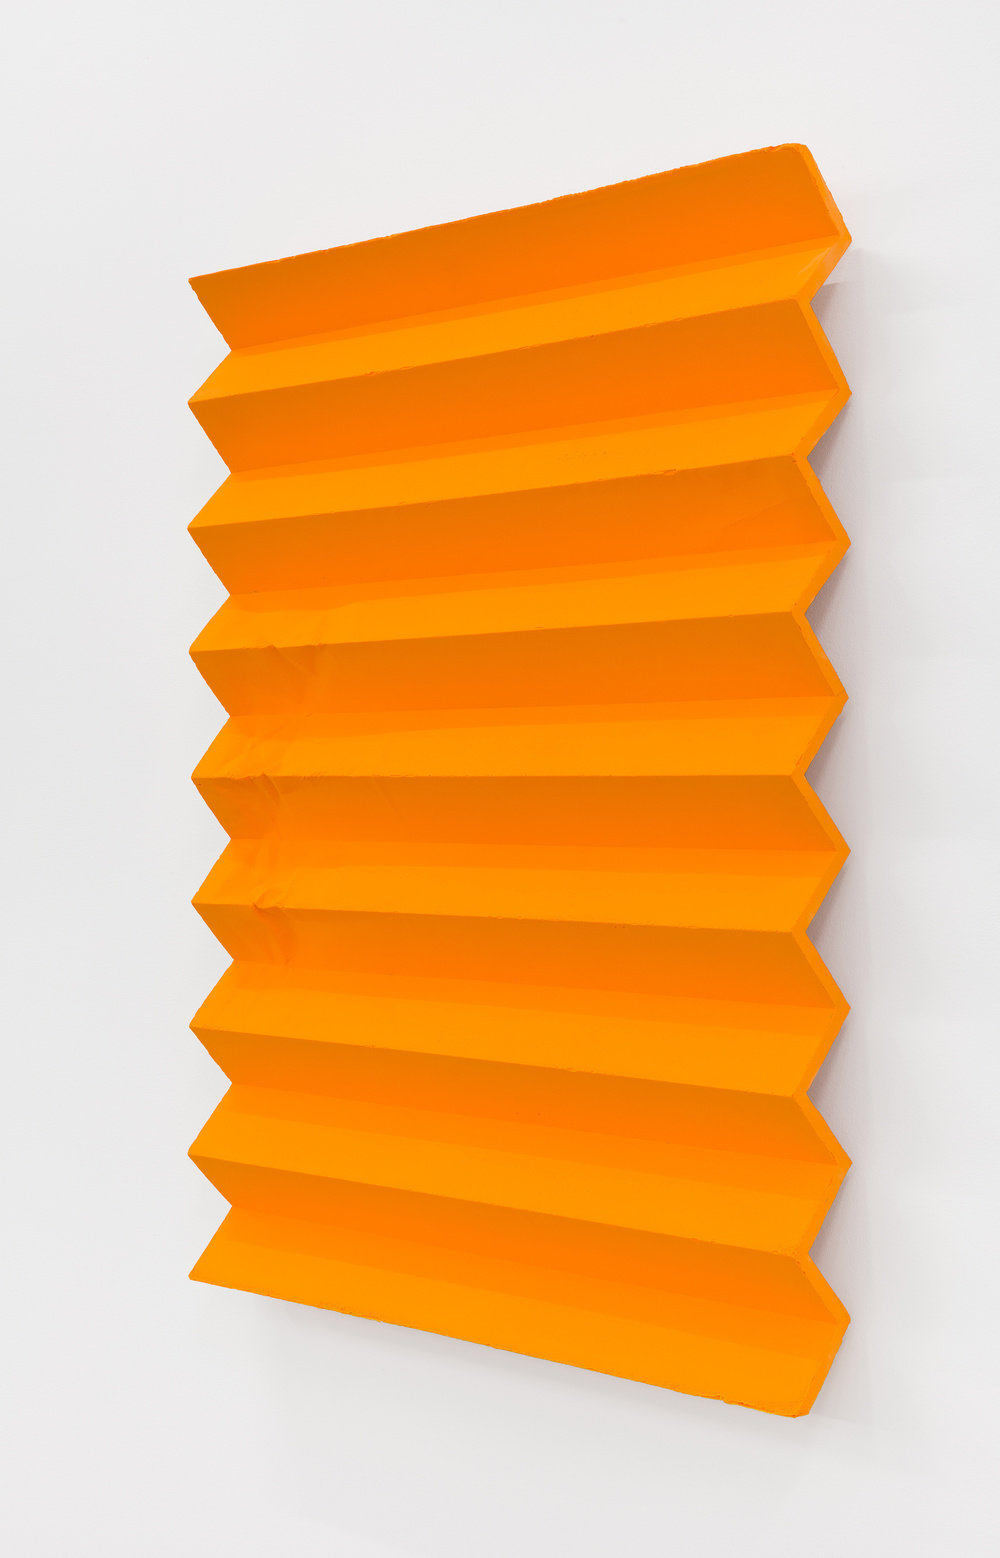 Hagen, pilgrimage ii (accordion fold, cadmium orange, diarylide yellow) (view 2), 2017 2018, cast acrylic paint, molding paste, fiberglass reinforced plastic, aluminum armature, 40 x 30 x 3 in., 101.6 x 76.2 x 7.6 cm, cnon 60.904 pierre le hors